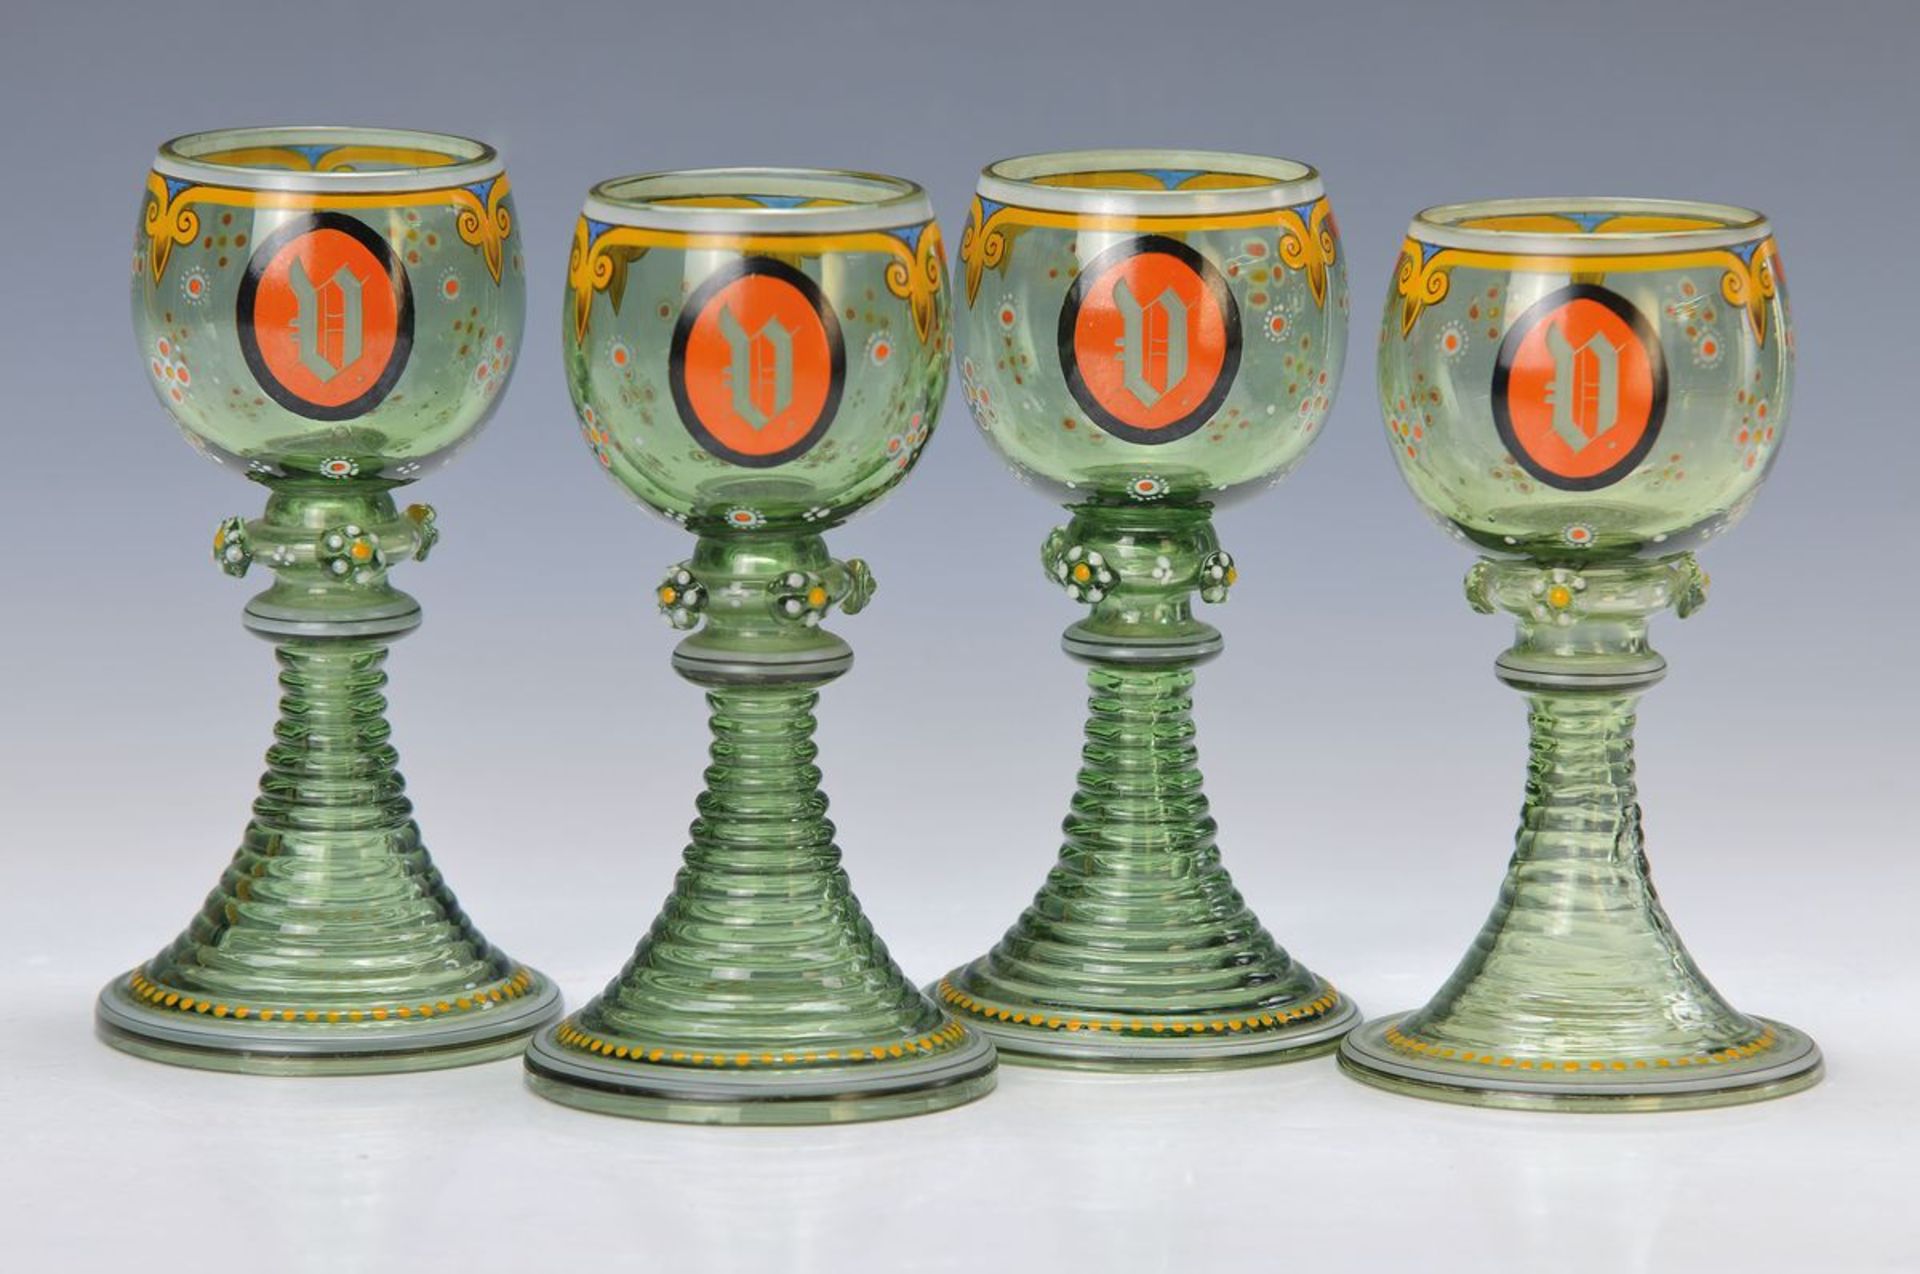 6 Weingläser, deutsch, um 1880-90, grünes mundgeblasenes Glas mit reicher bunter Emailmalerei im